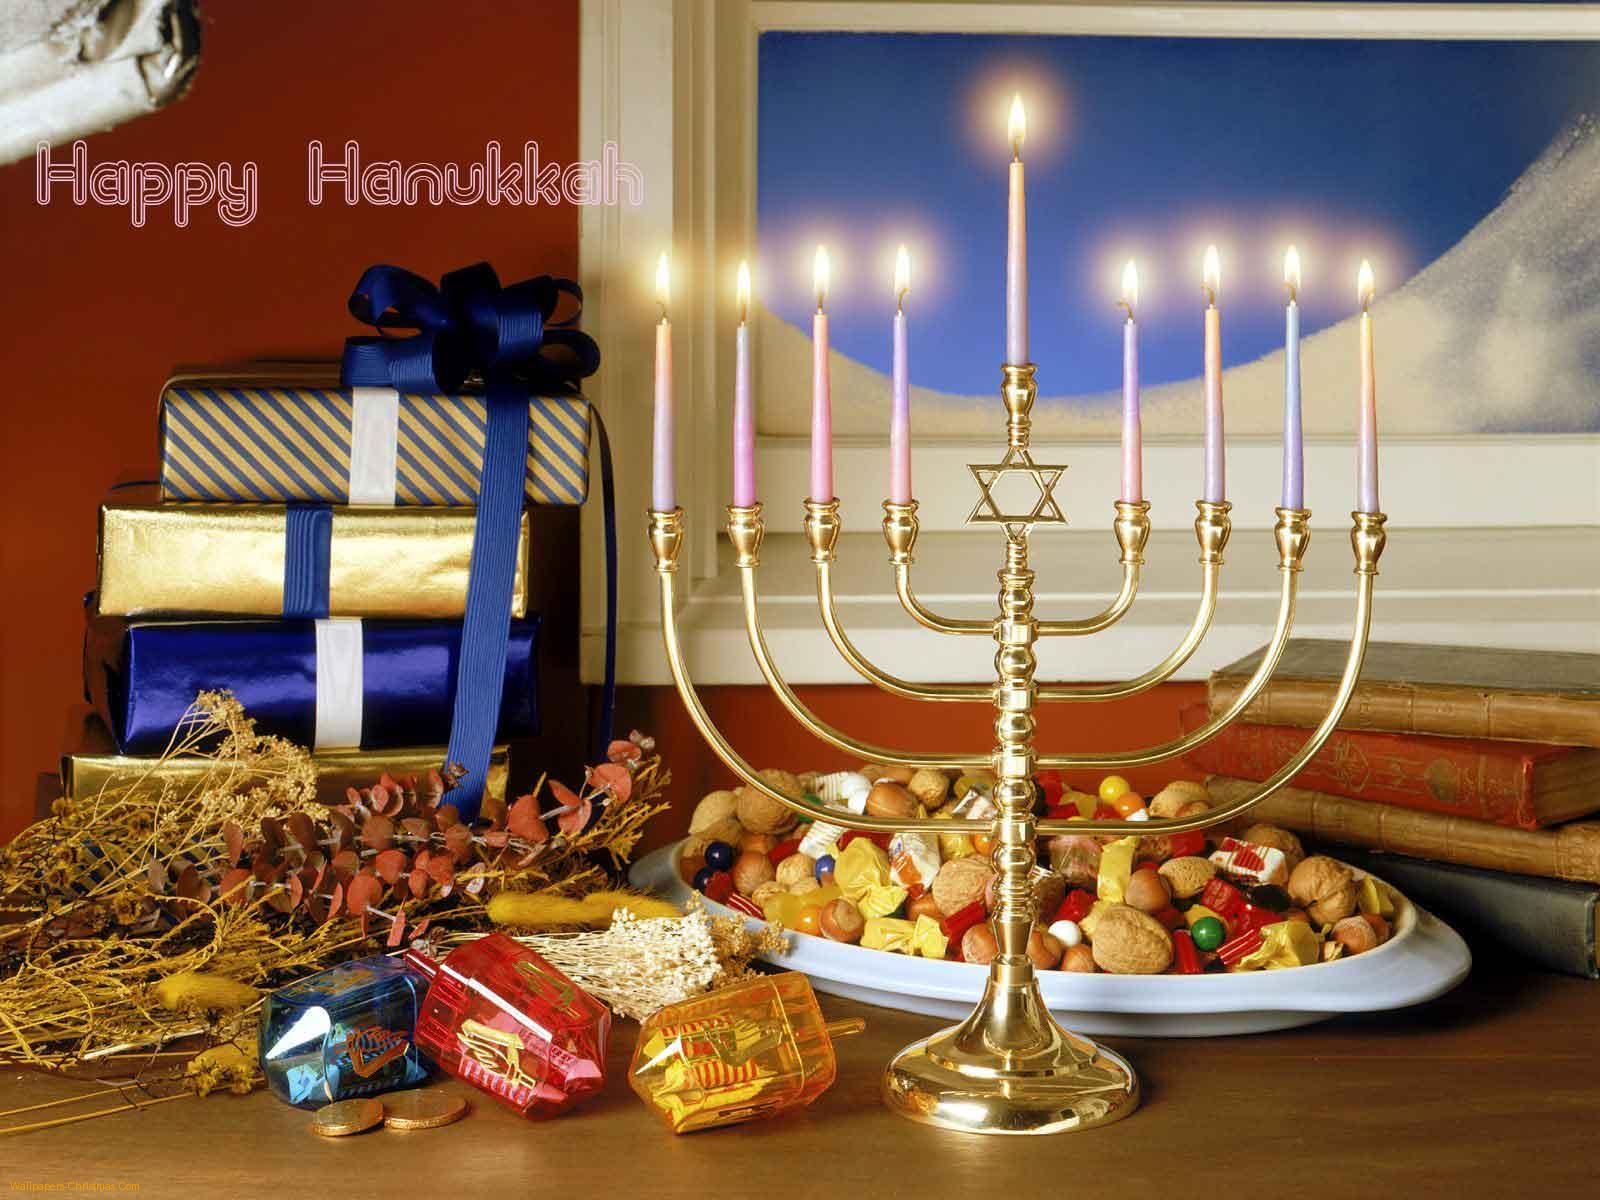 Happy Hanukkah Wallpaper HQ Resolution